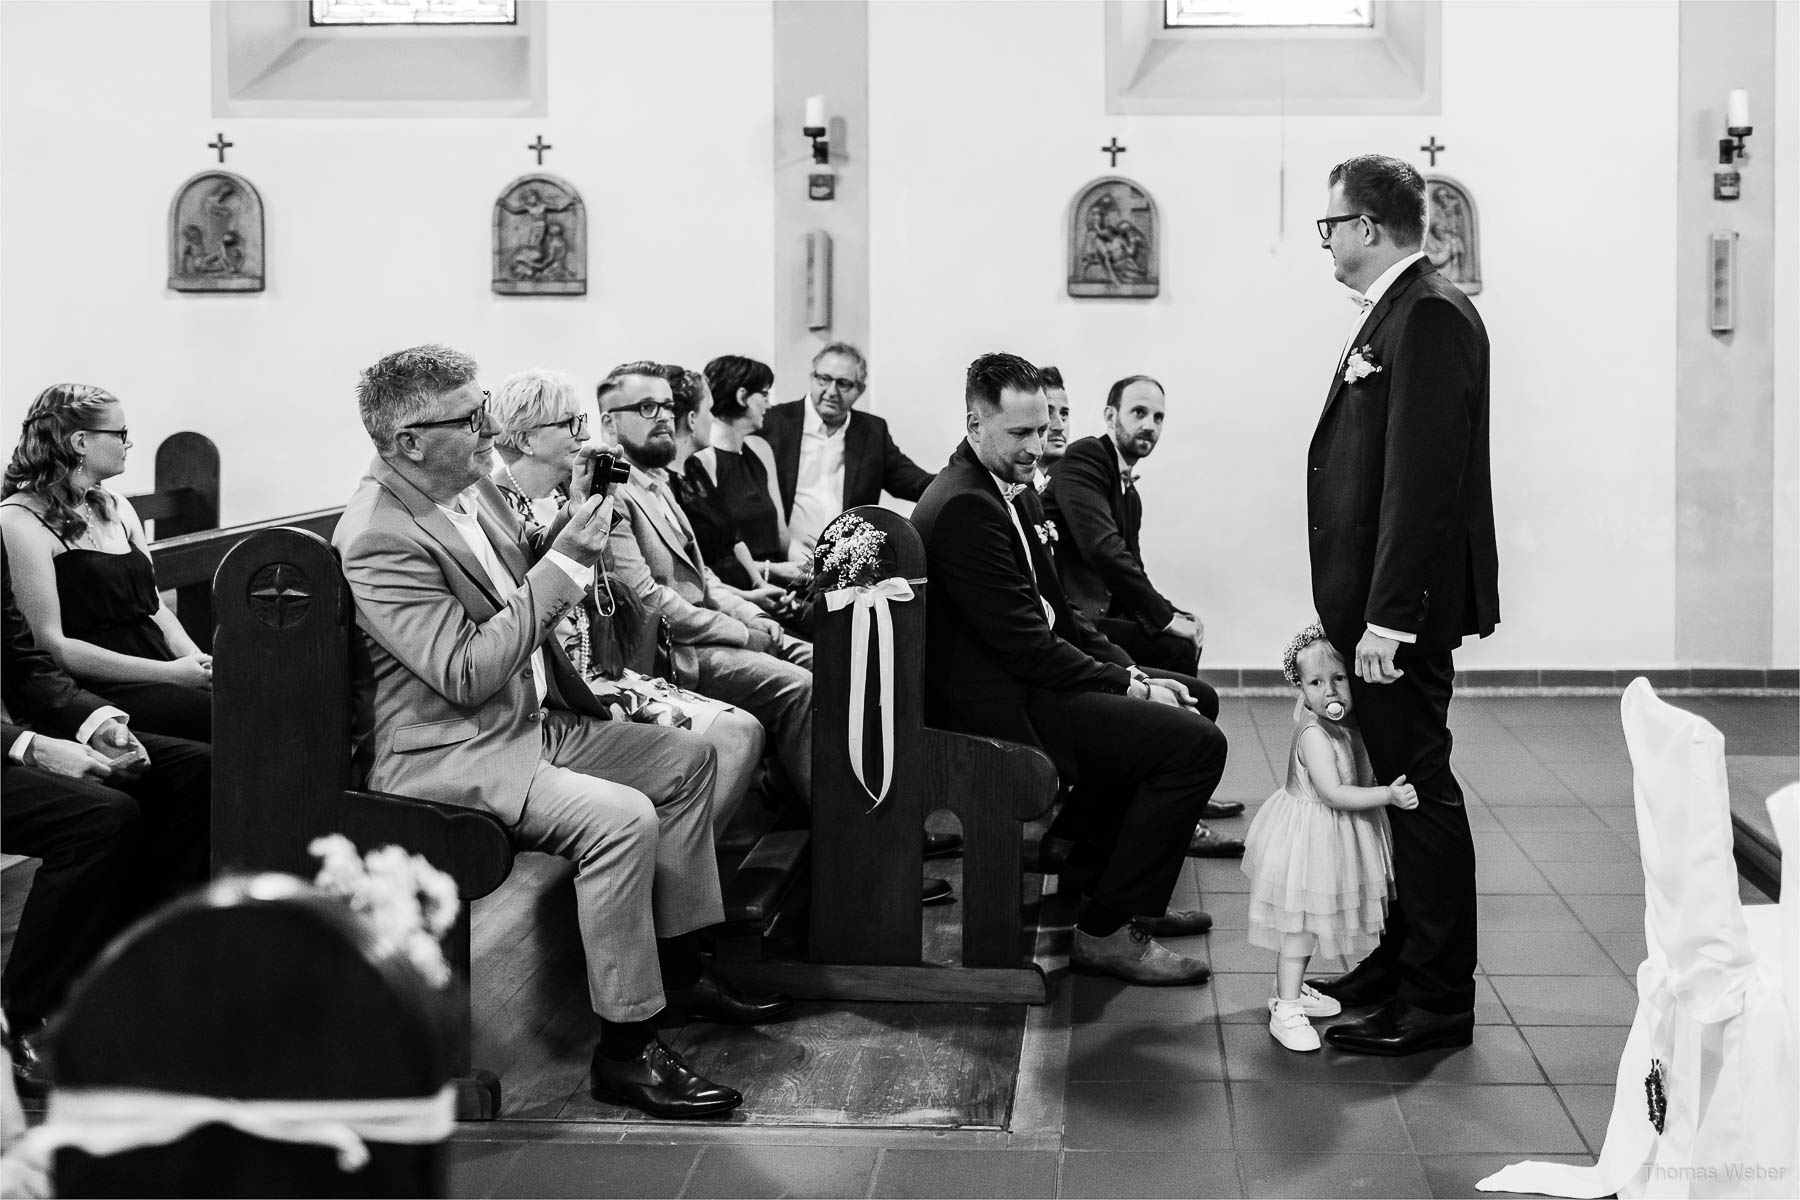 Hochzeit in Rastede, Fotograf Oldenburg, Thomas Weber